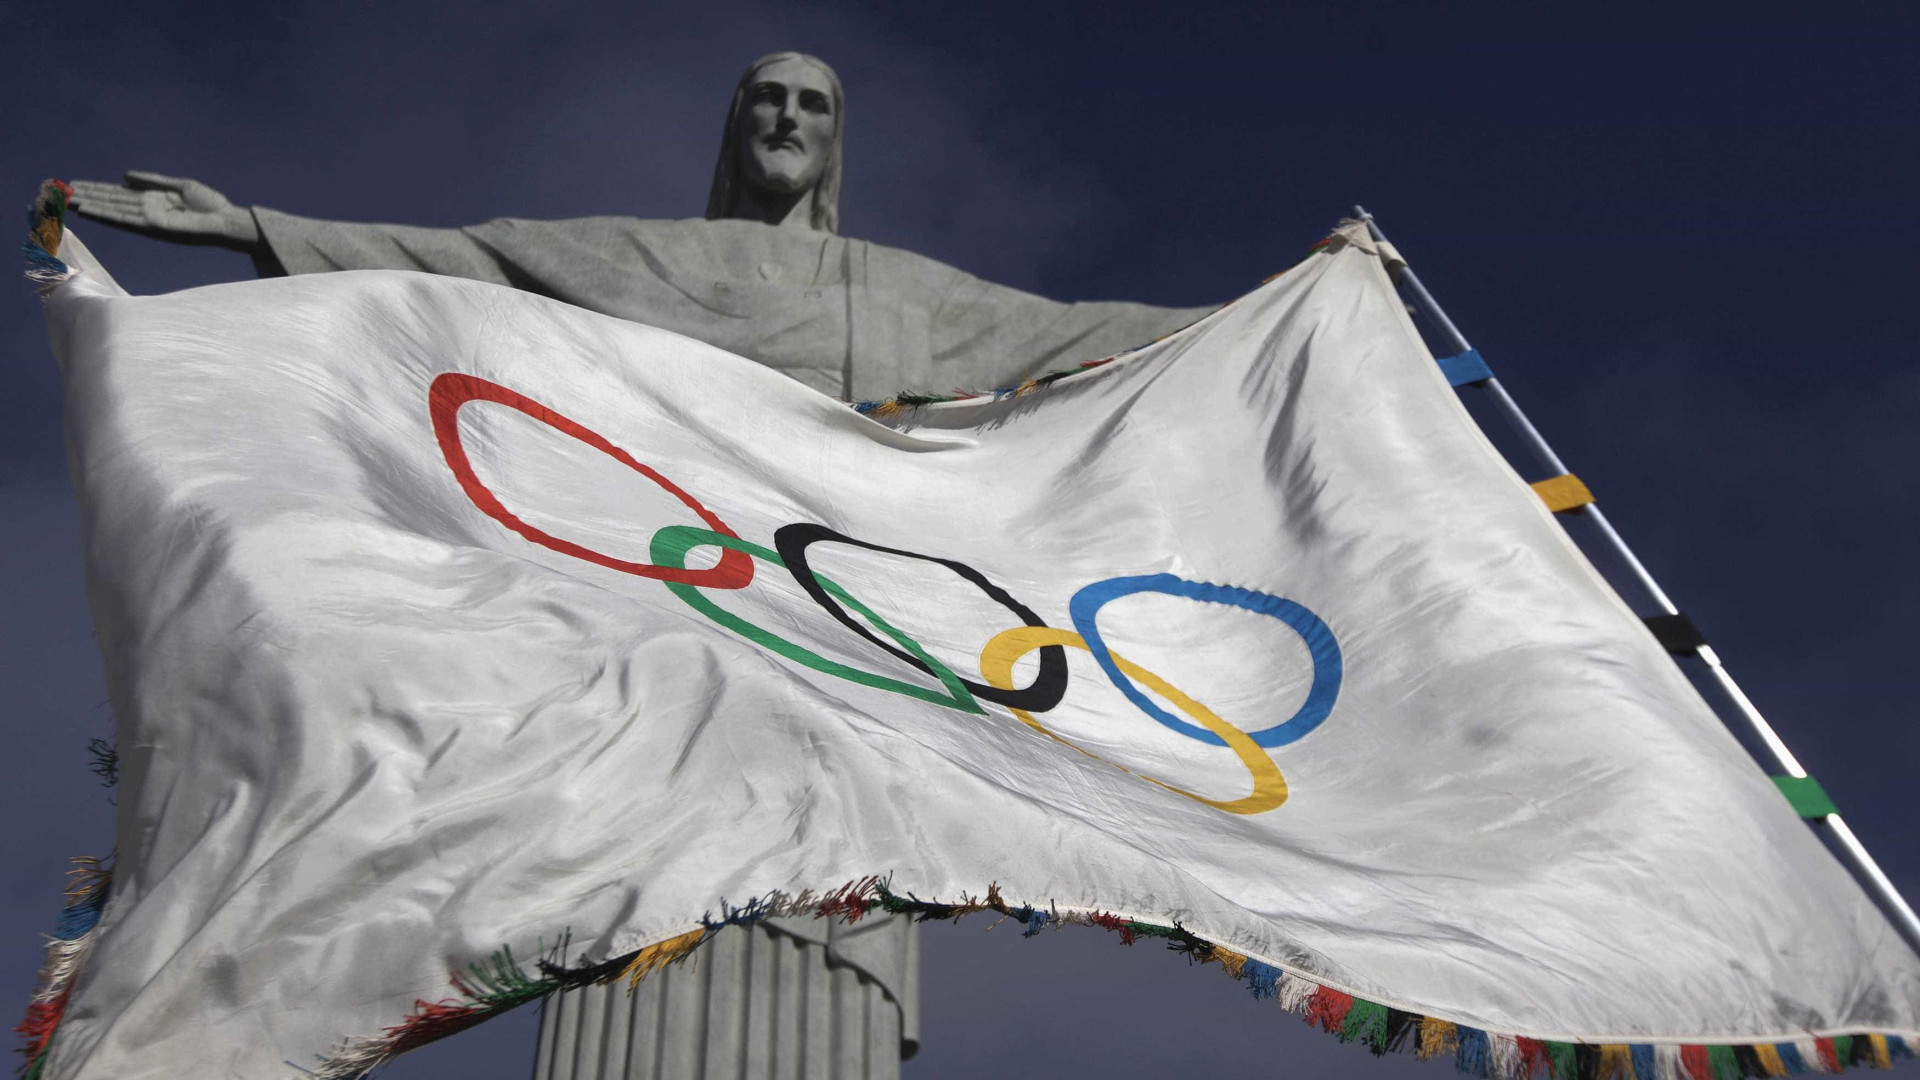 Emissão de carbono será alta nos Jogos Olímpicos de 2016